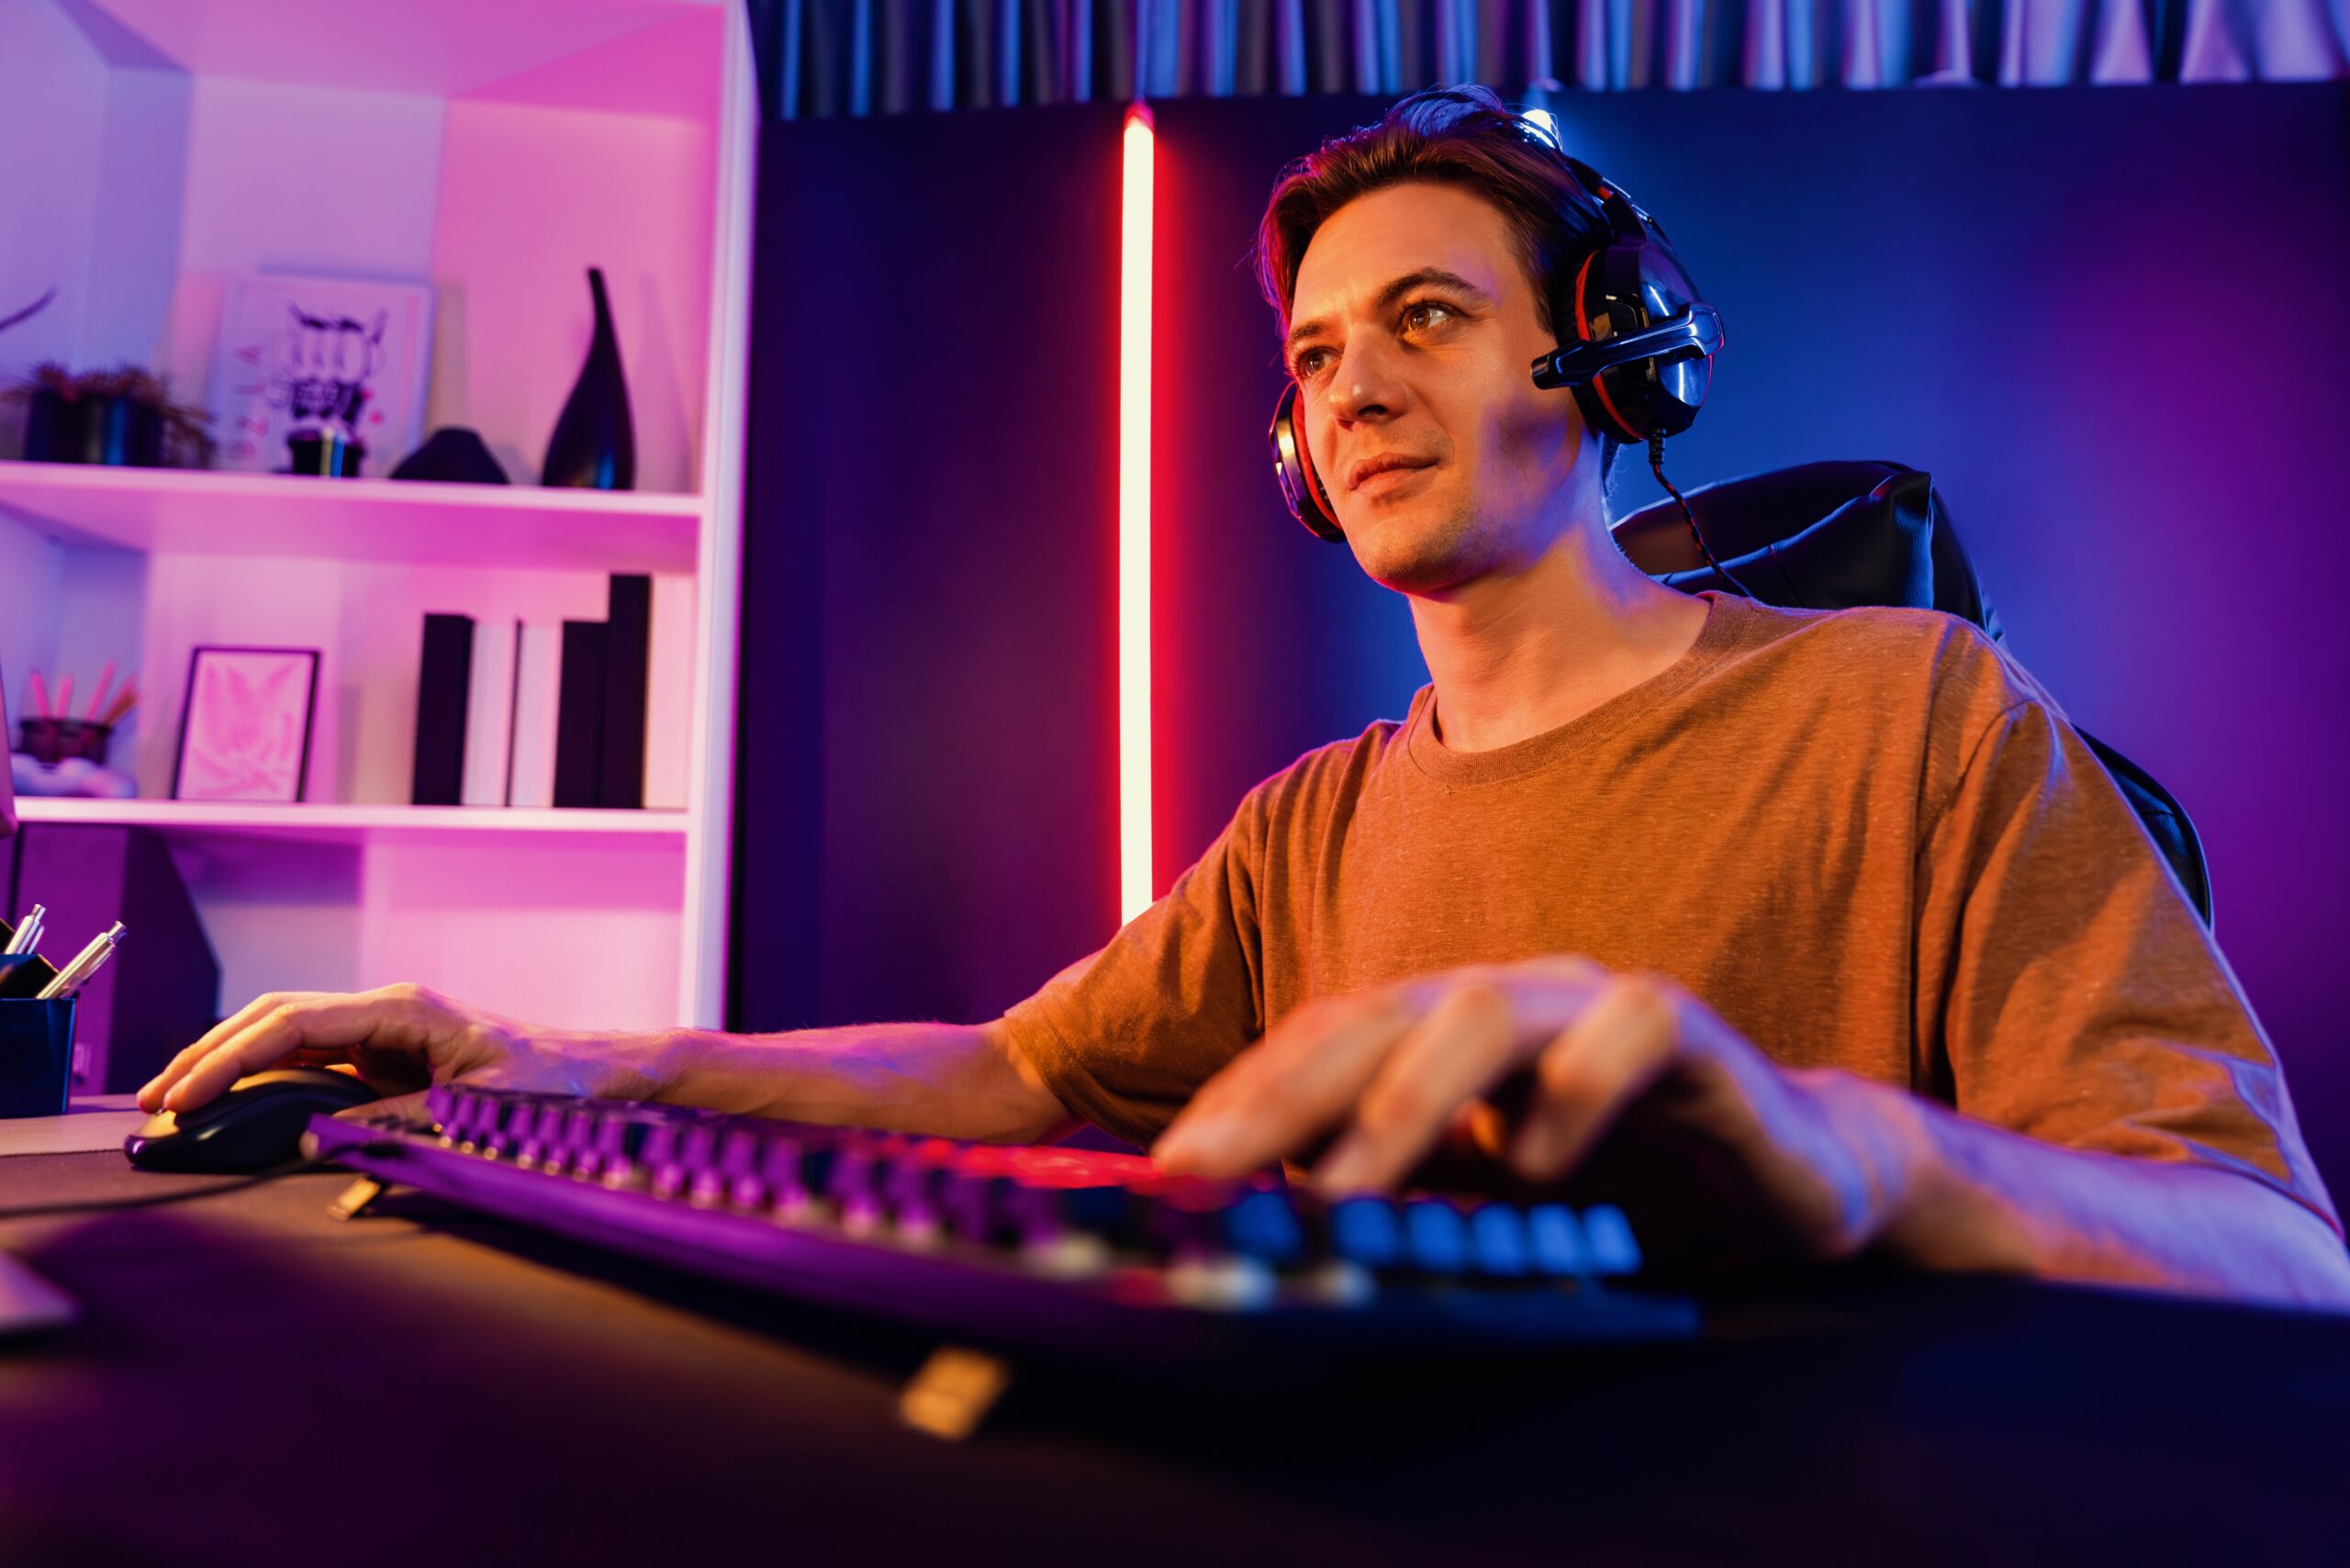 Mężczyzna z zestawem słuchawkowym siedzi przed komputerem w jasnym, kolorowym pokoju.